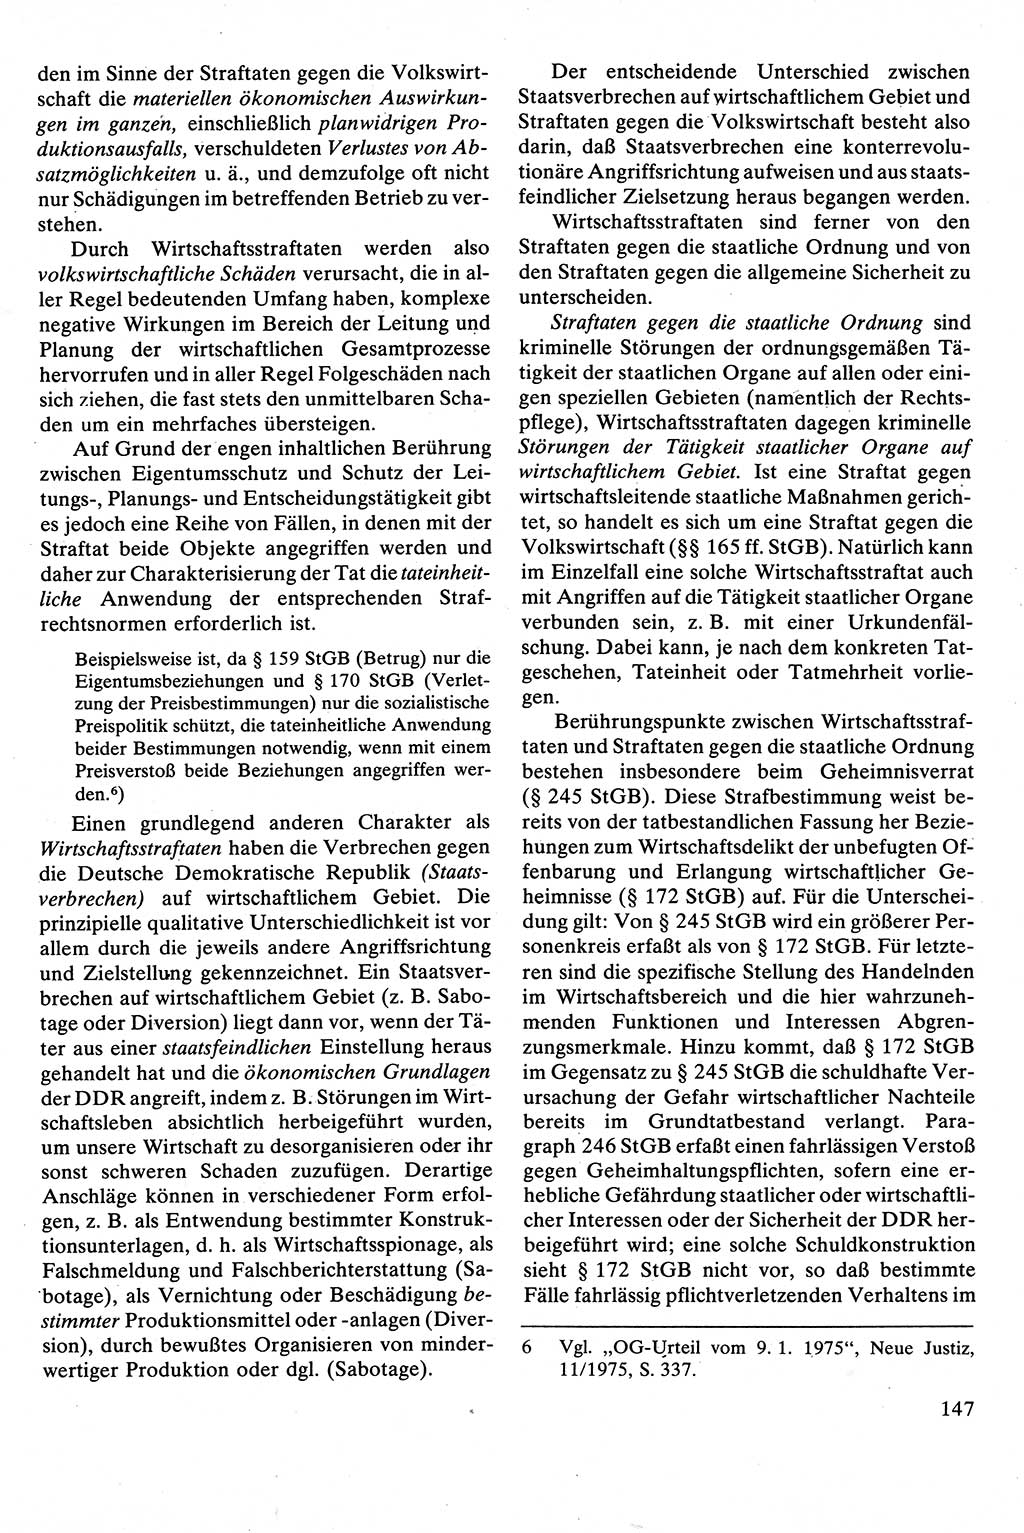 Strafrecht [Deutsche Demokratische Republik (DDR)], Besonderer Teil, Lehrbuch 1981, Seite 147 (Strafr. DDR BT Lb. 1981, S. 147)